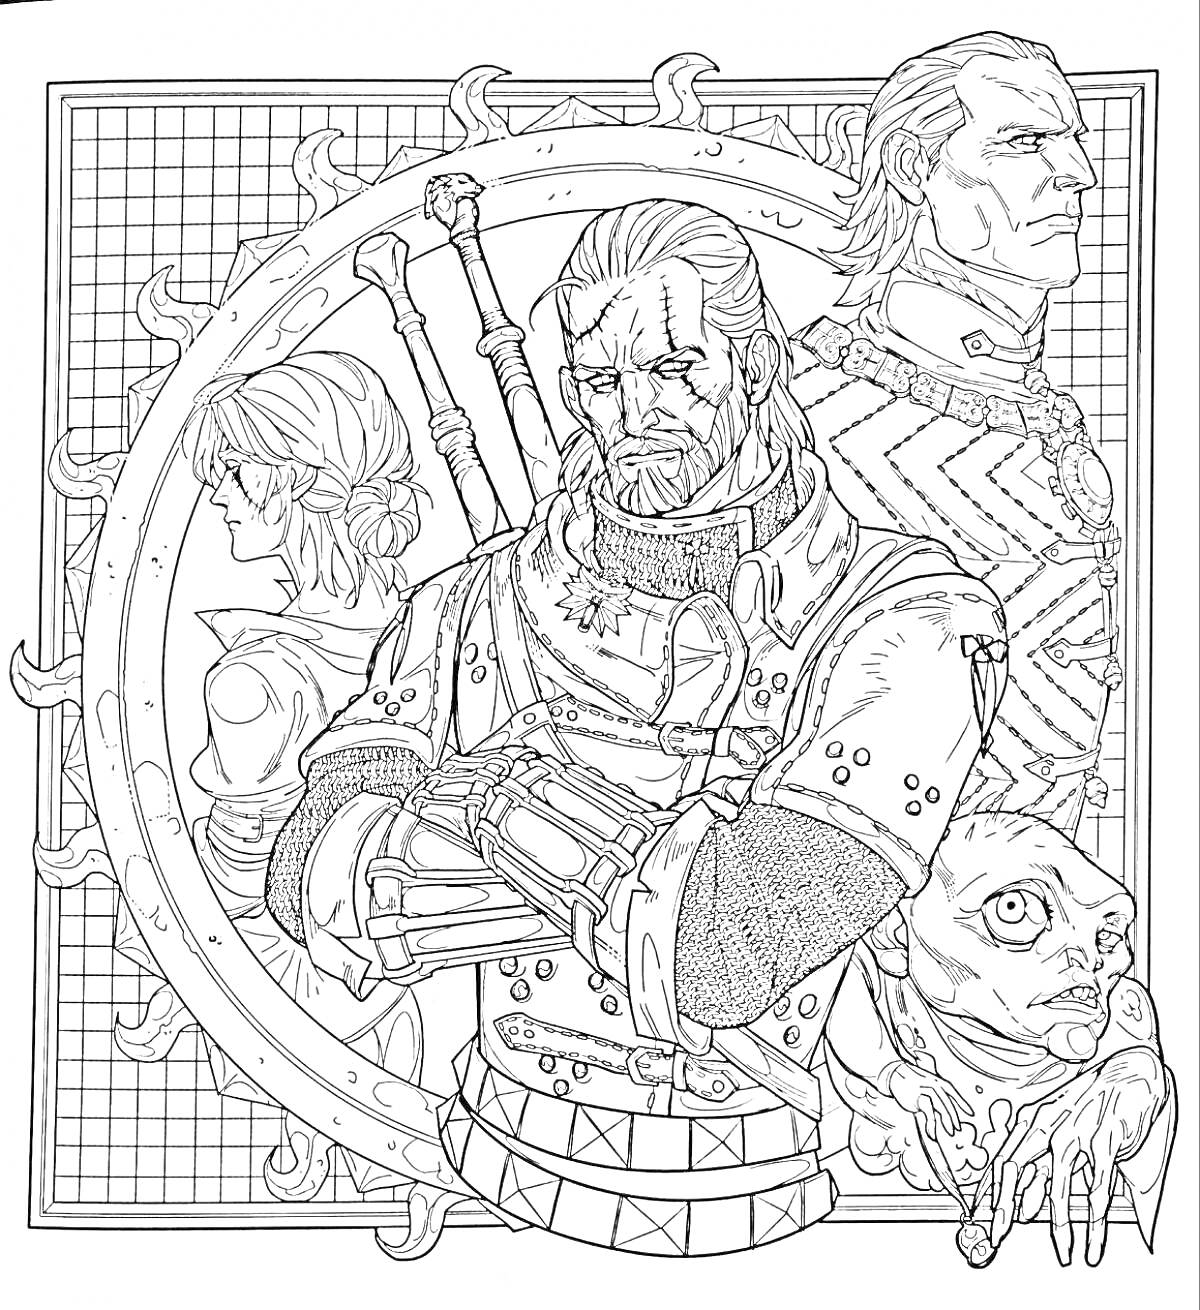 Раскраска Групповой портрет персонажей Ведьмак, с изображением главного героя с мечами, второстепенного персонажа в доспехах и отрубленной головою монстра на фоне решетки